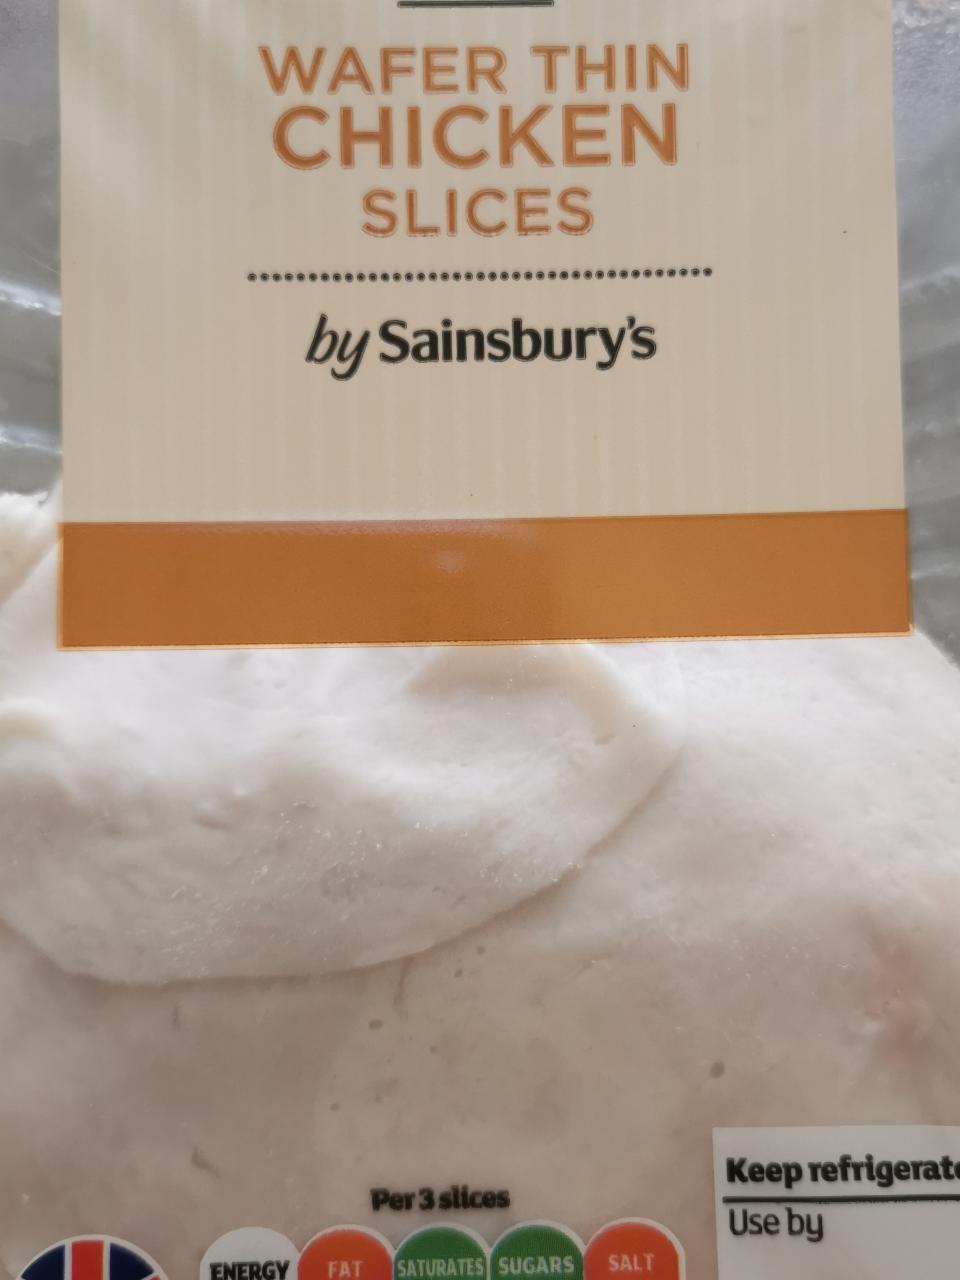 Fotografie - Wafer Thin British Chicken Slices - Sainsbury's